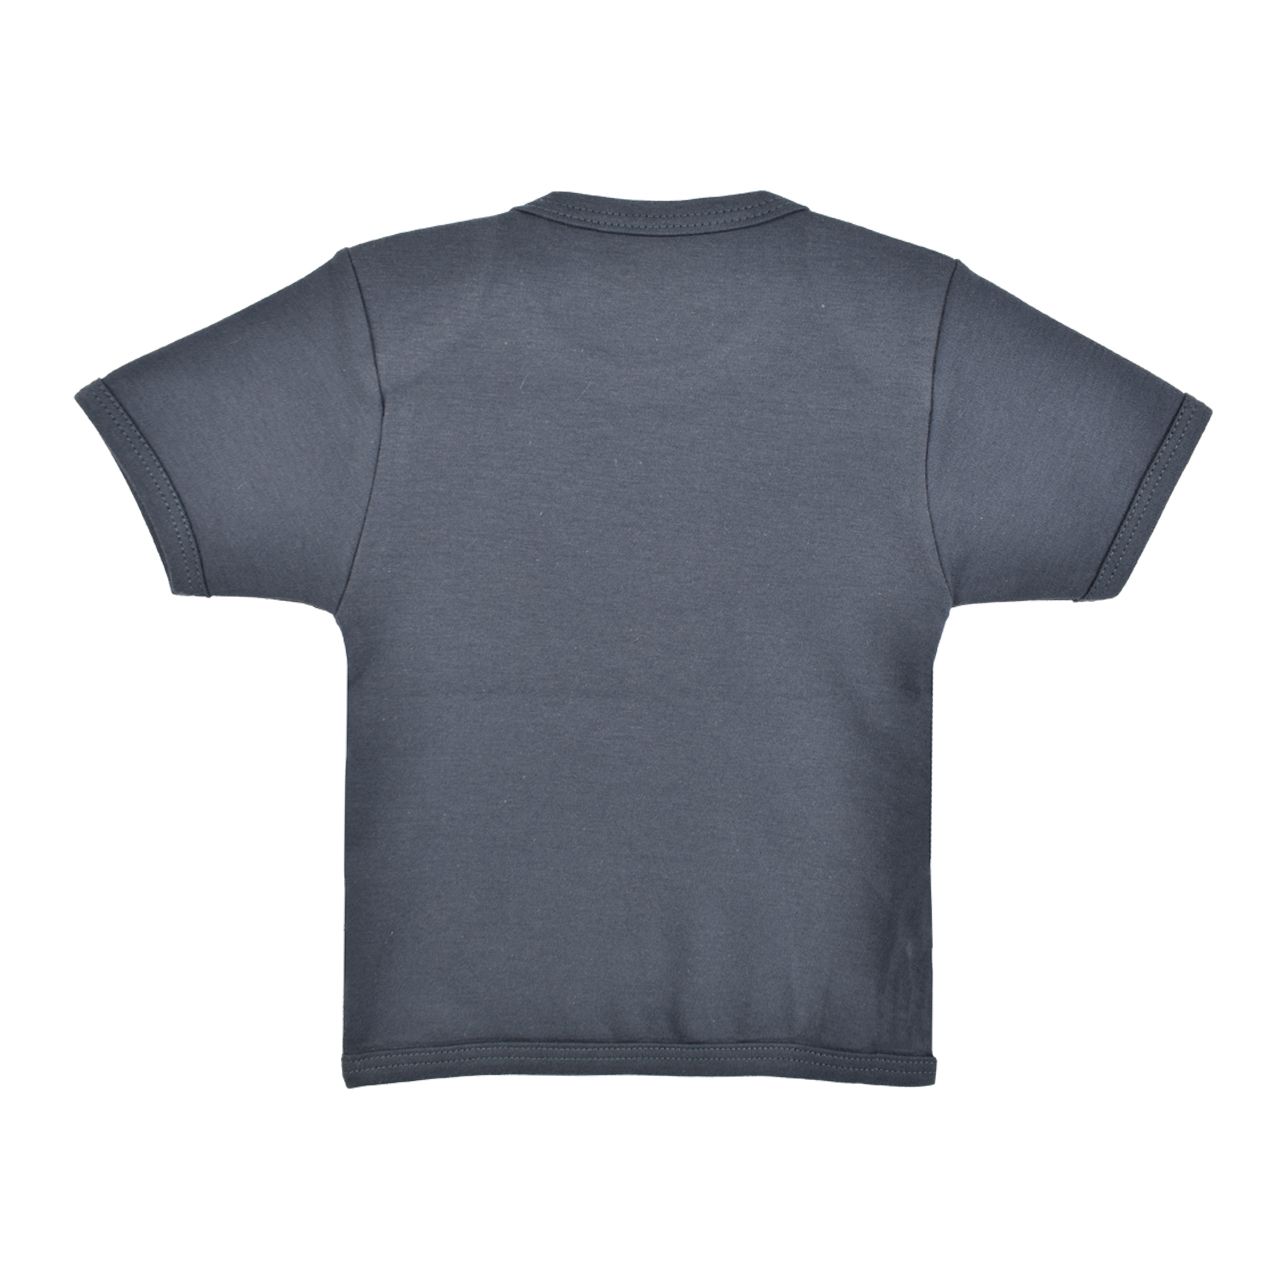 تی شرت آستین کوتاه نوزادی اسپیکو کد 300 -3 بسته دو عددی -  - 6